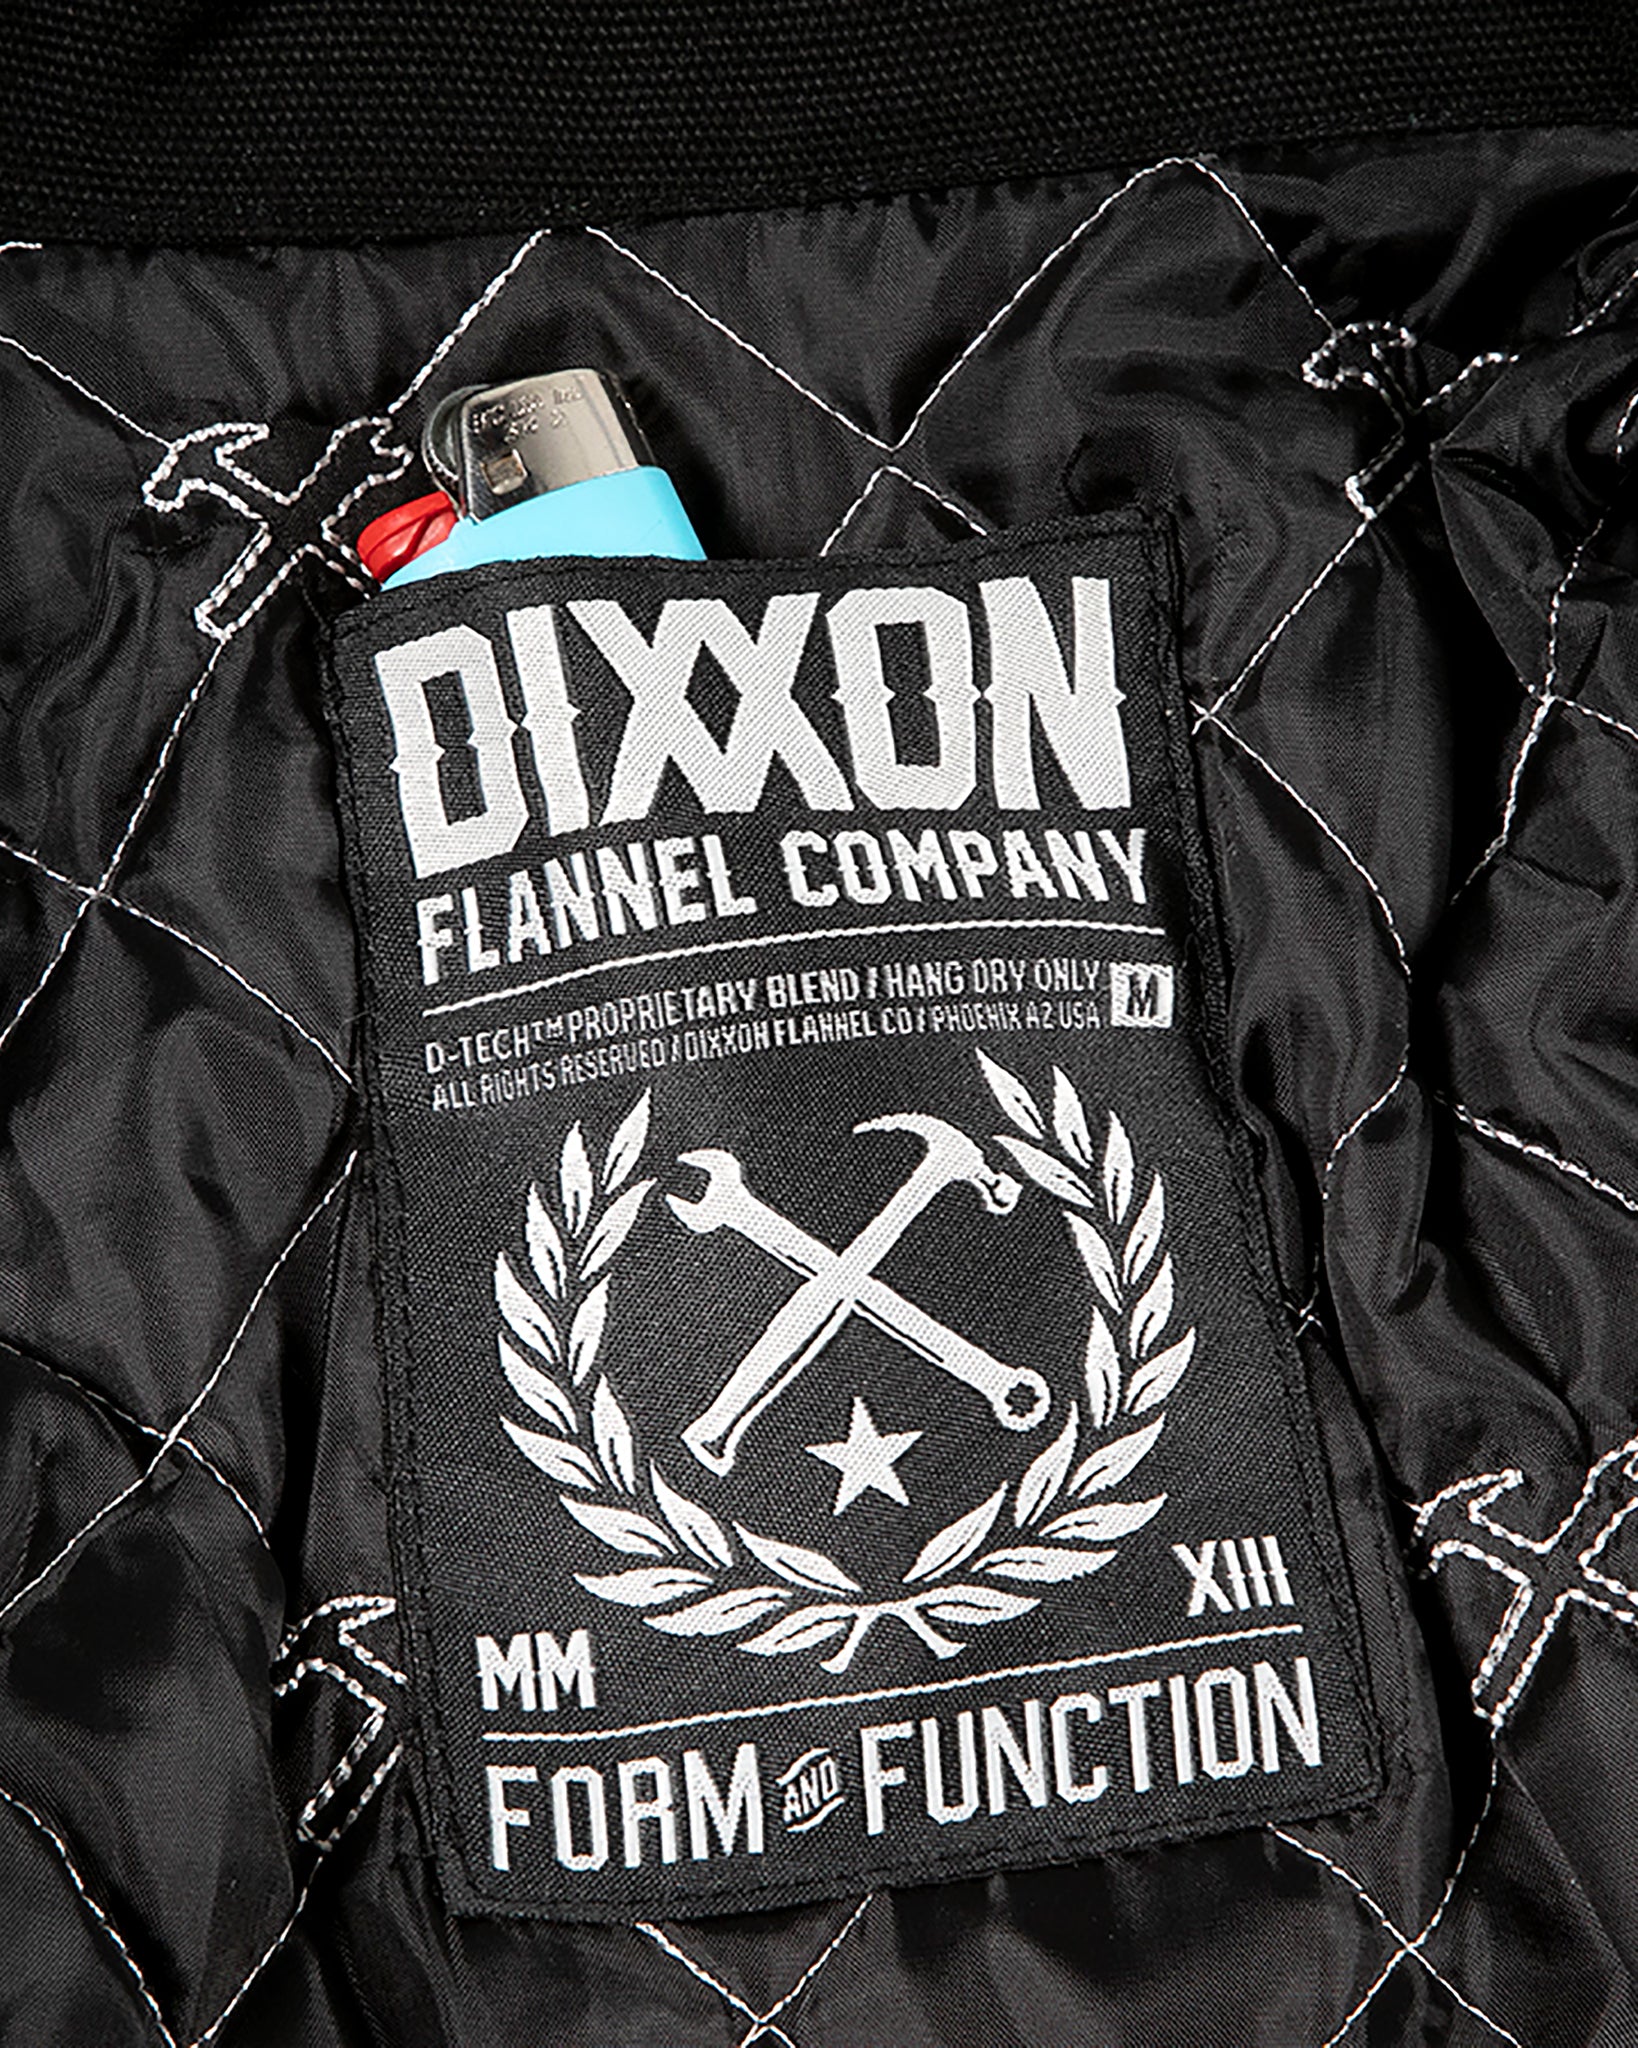 Dixxon Workhorse Jacket 2.0